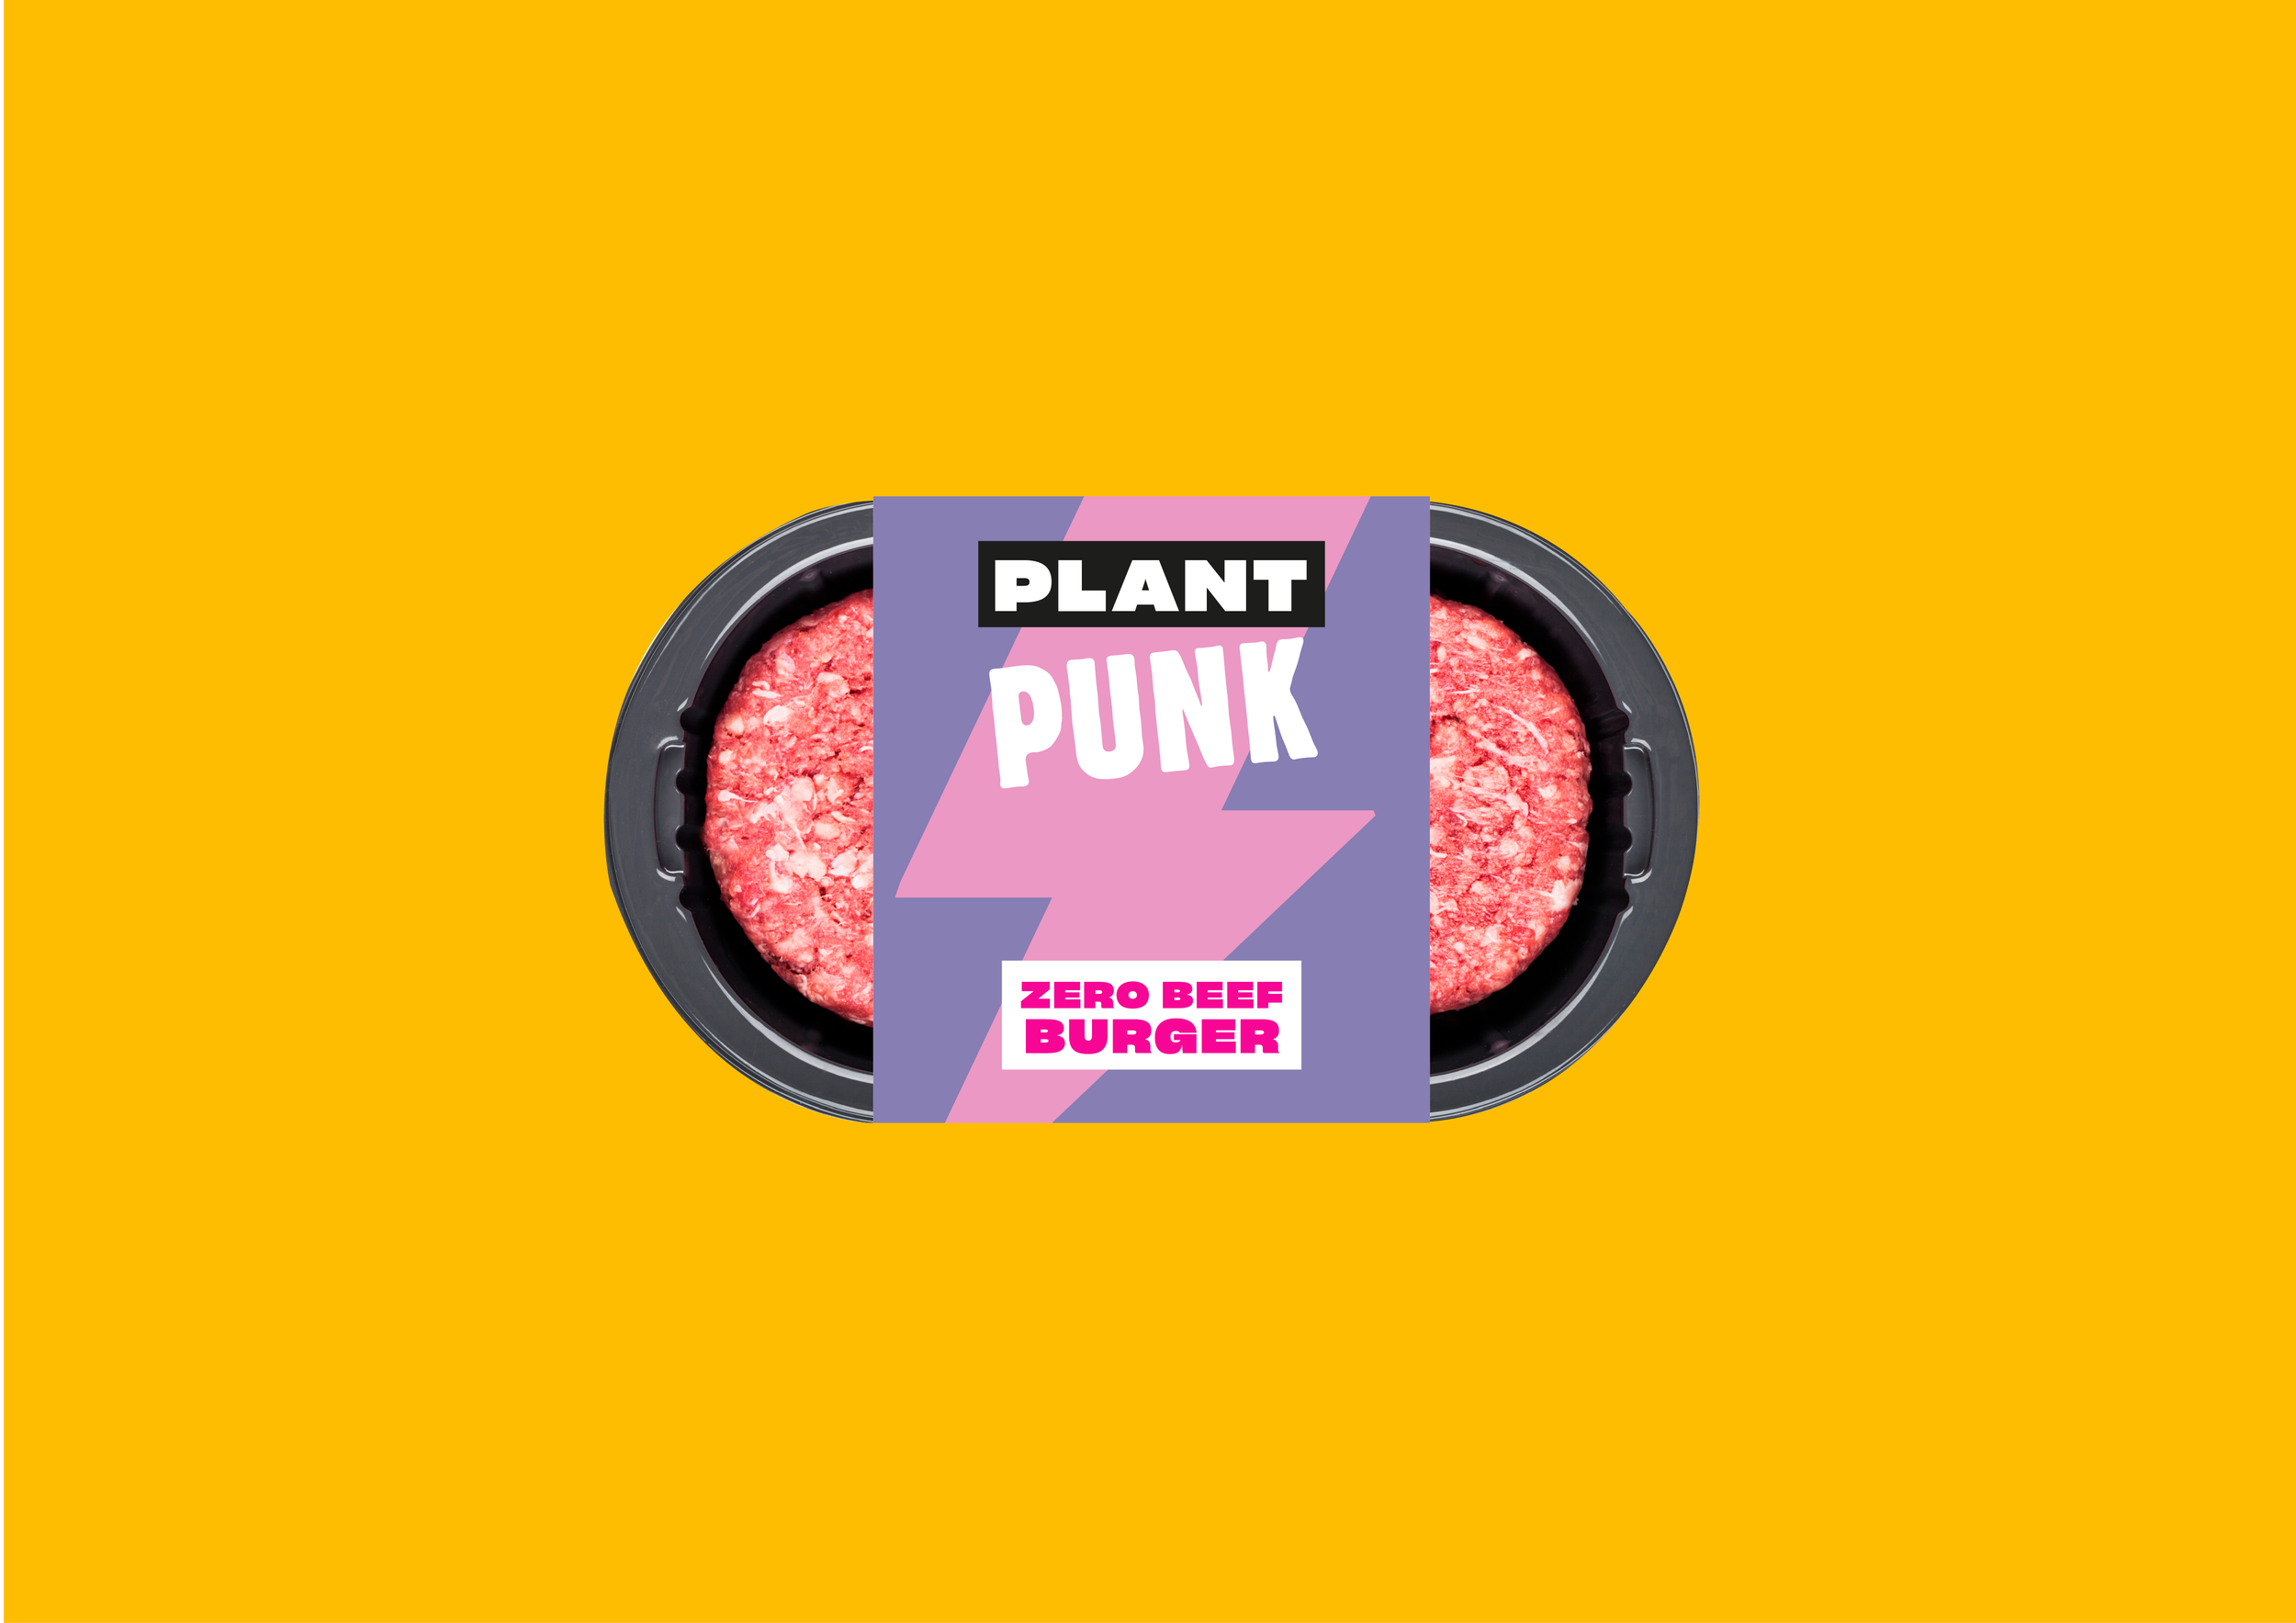 Freelance Packaging Designer UK Logo, and pack designs for plant punk - a vegan plant-based burger brand